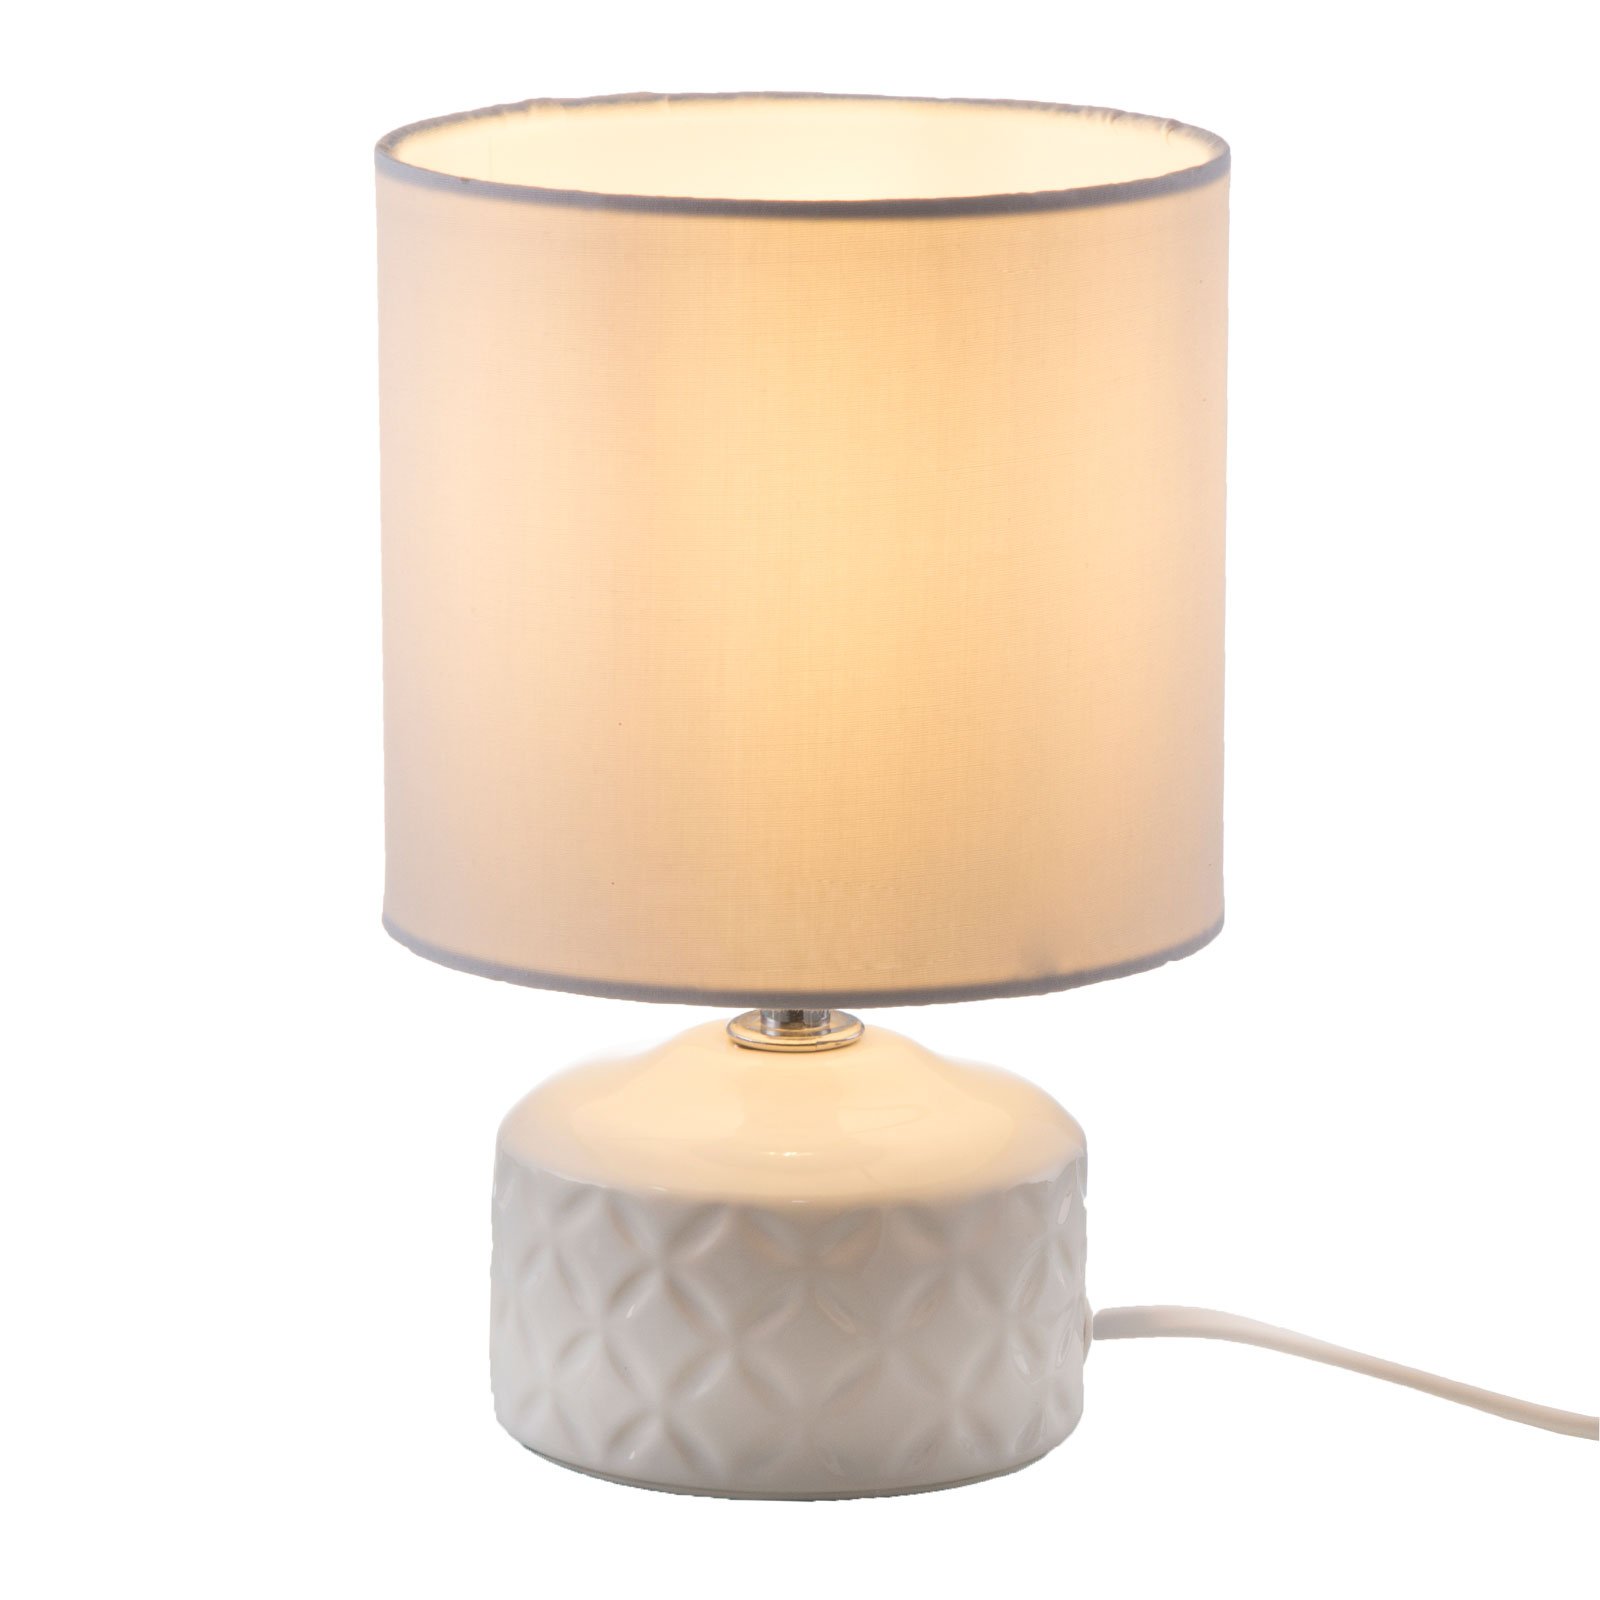 Jon table lamp with ceramic base, white